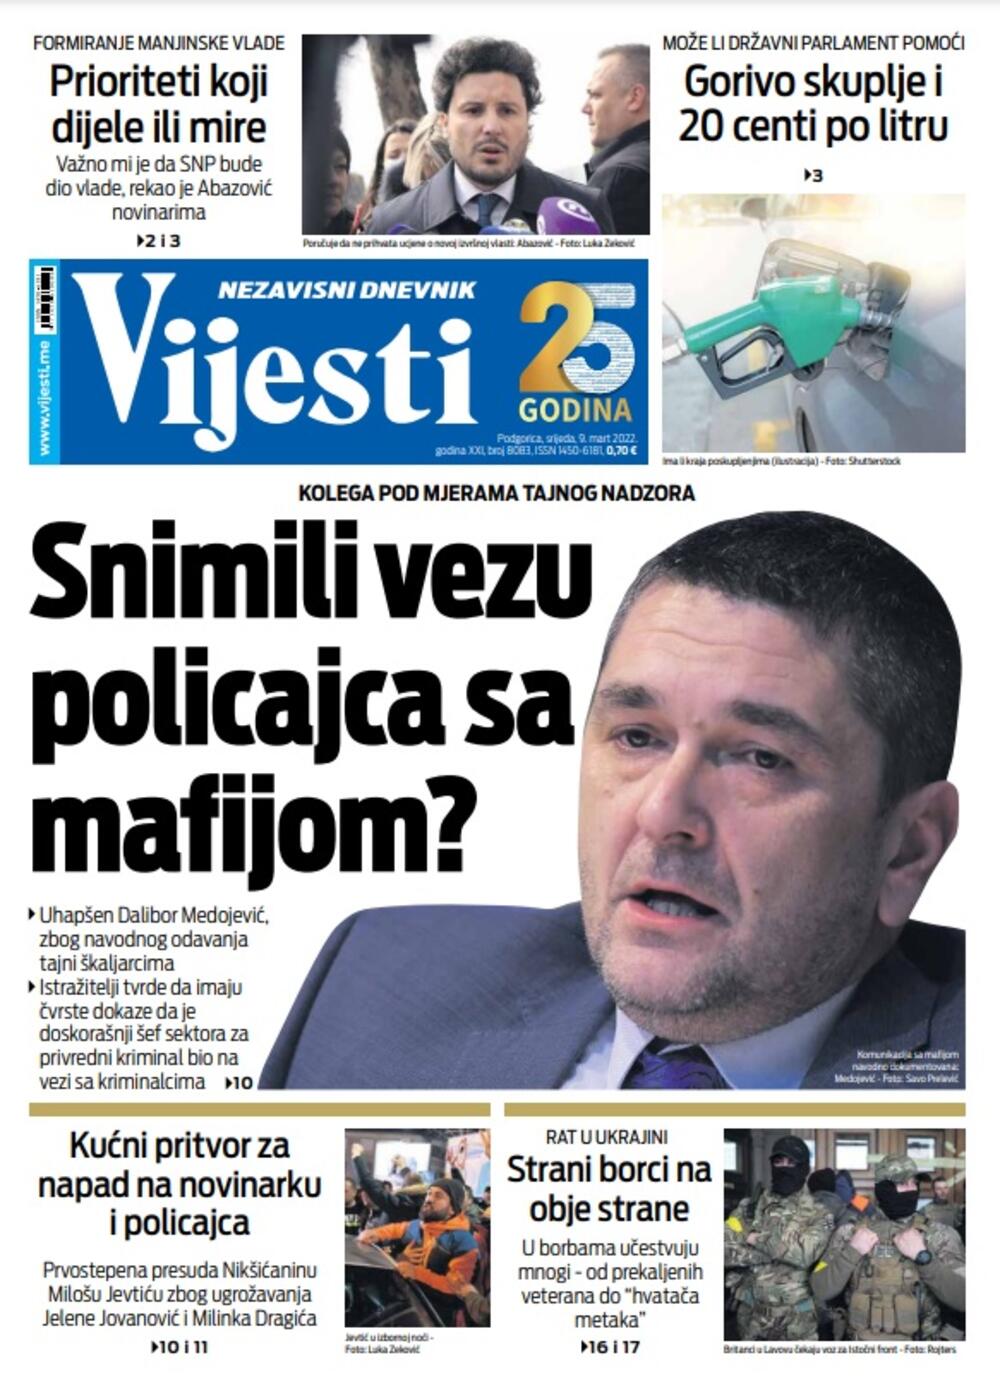 Naslovna strana "Vijesti" za 9. mart 2022., Foto: Vijesti